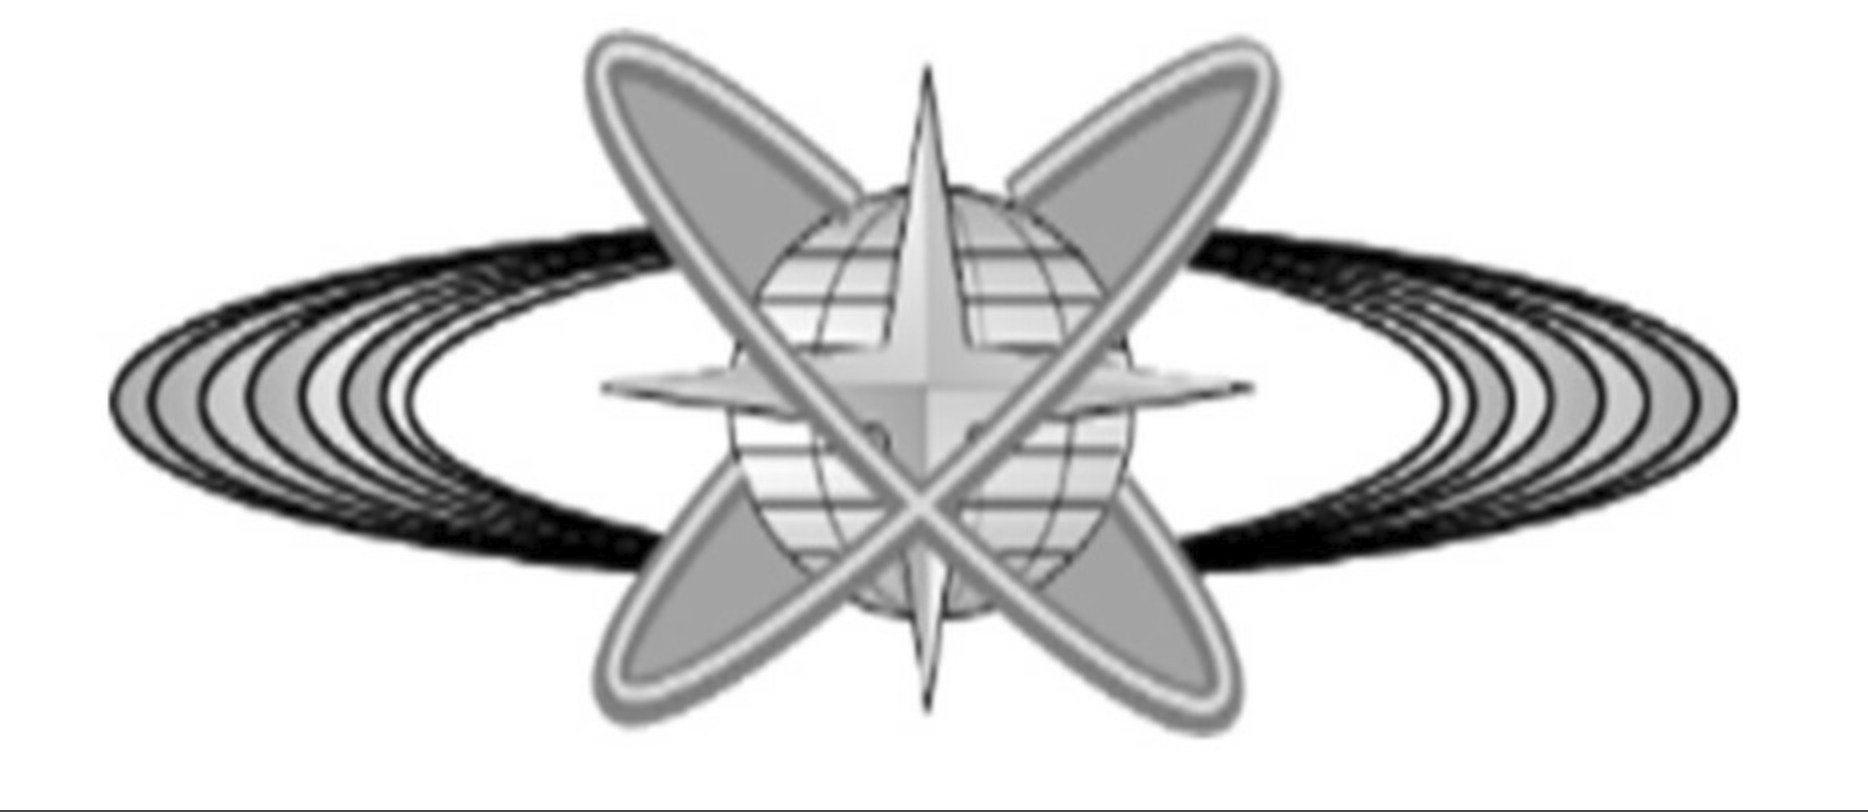 宇宙作戦隊の徽章デザイン